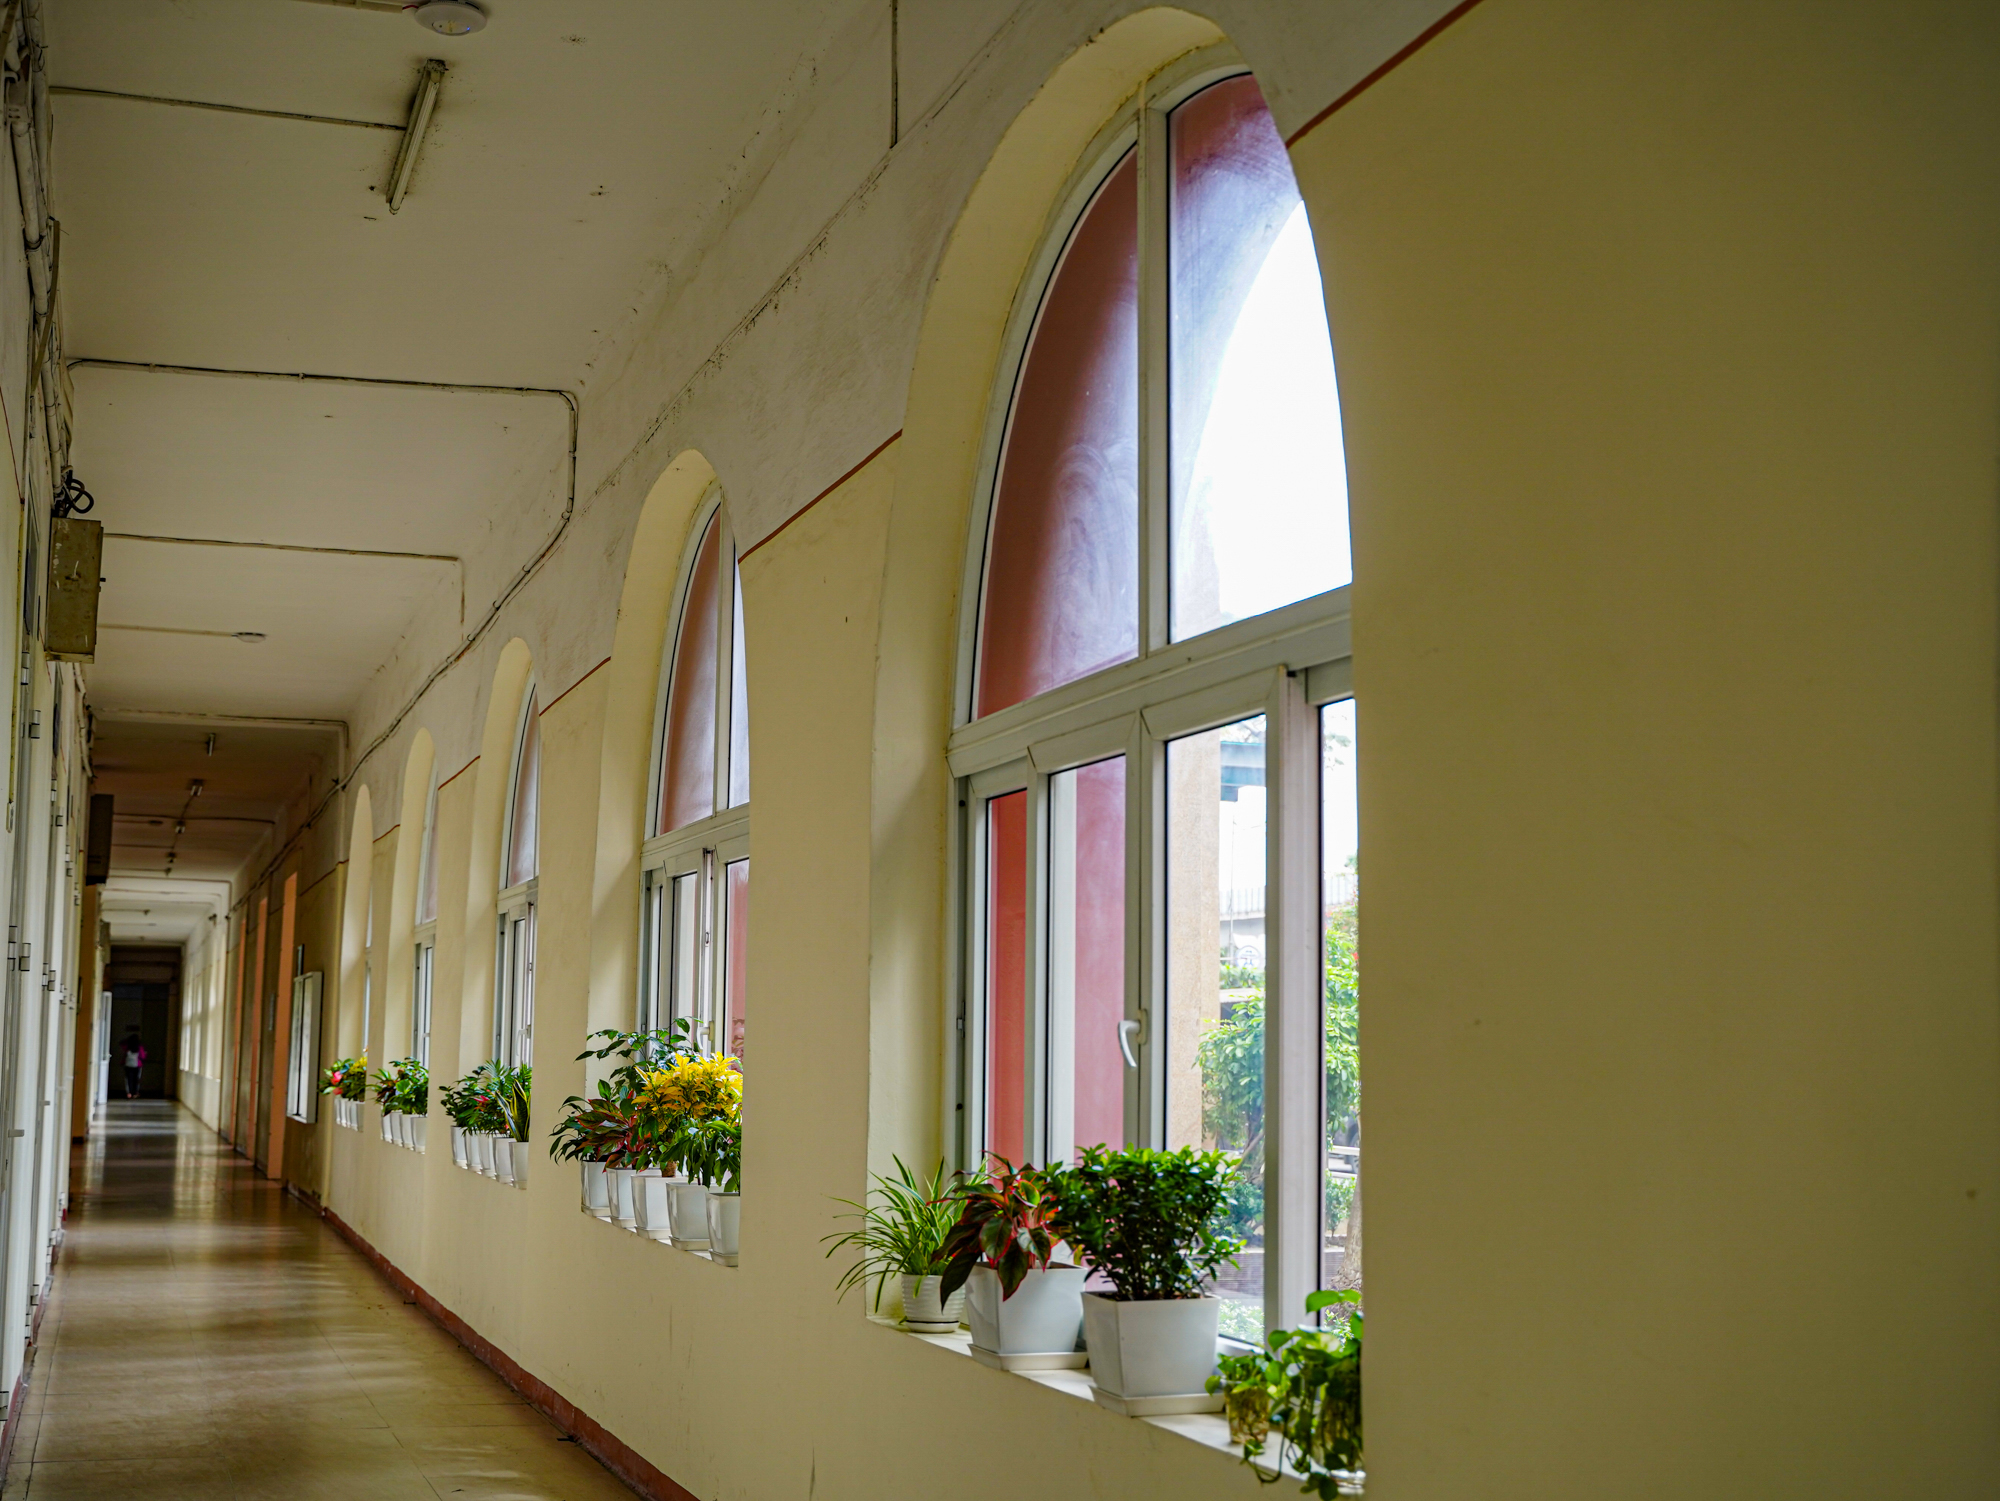 Trường đại học khoa học cơ bản, có bề dày 66 năm truyền thống ở Hà Nội - Ảnh 9.